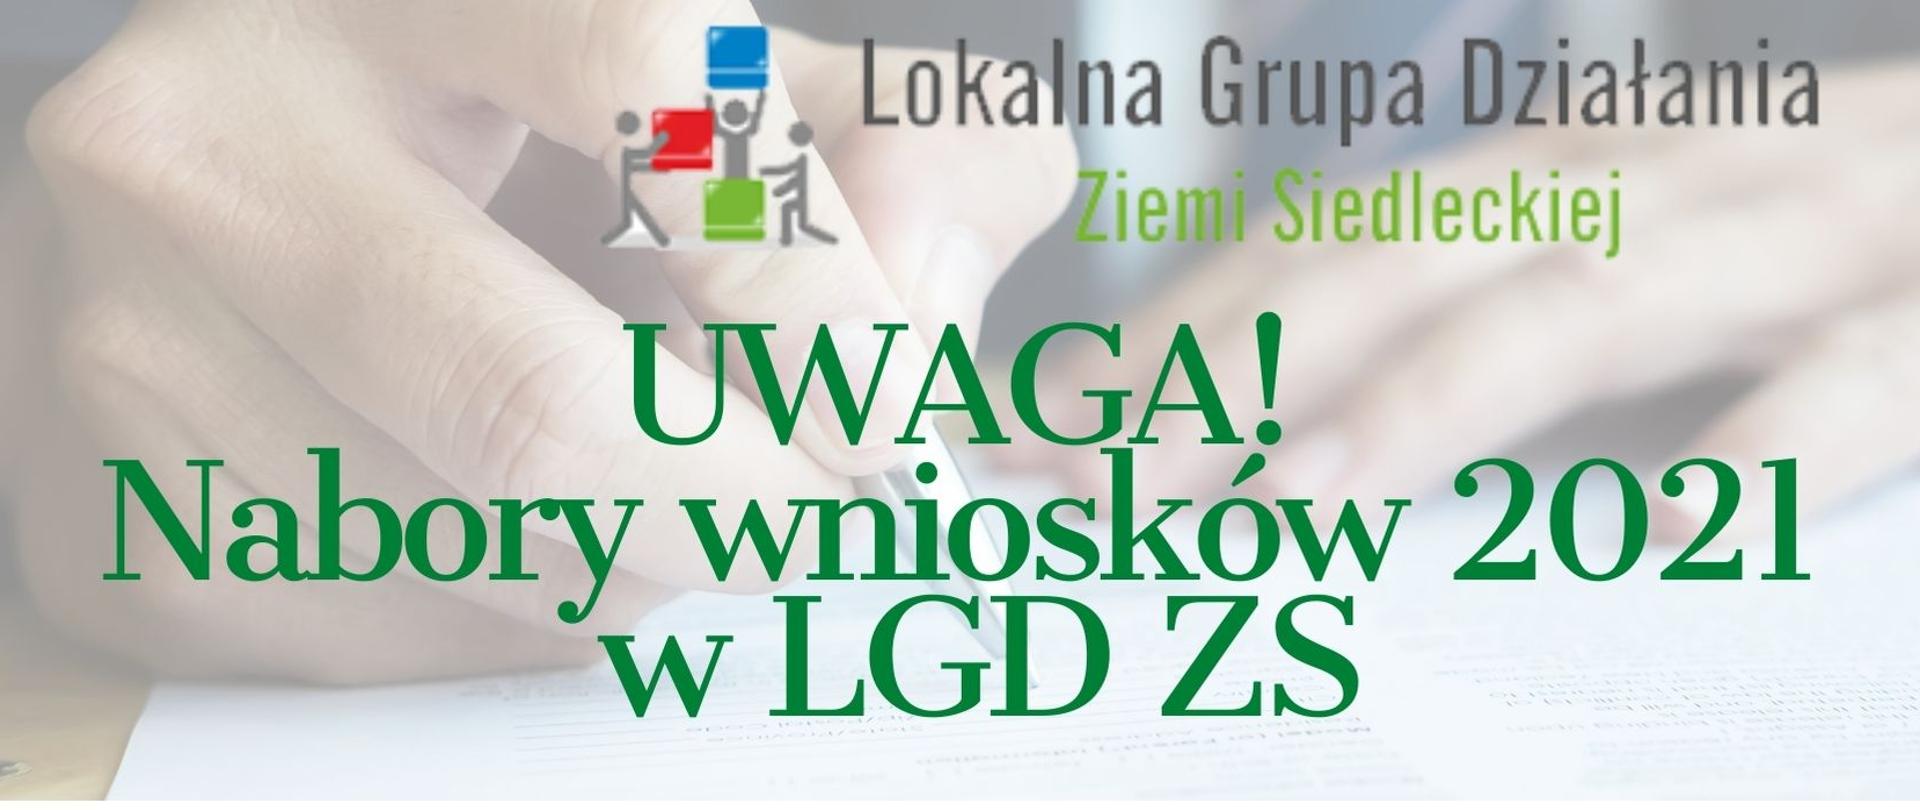 Lokalna Grupa Działania Ziemi Siedleckiej. Uwaga! Nabory wniosków 2021 w LGD ZS.